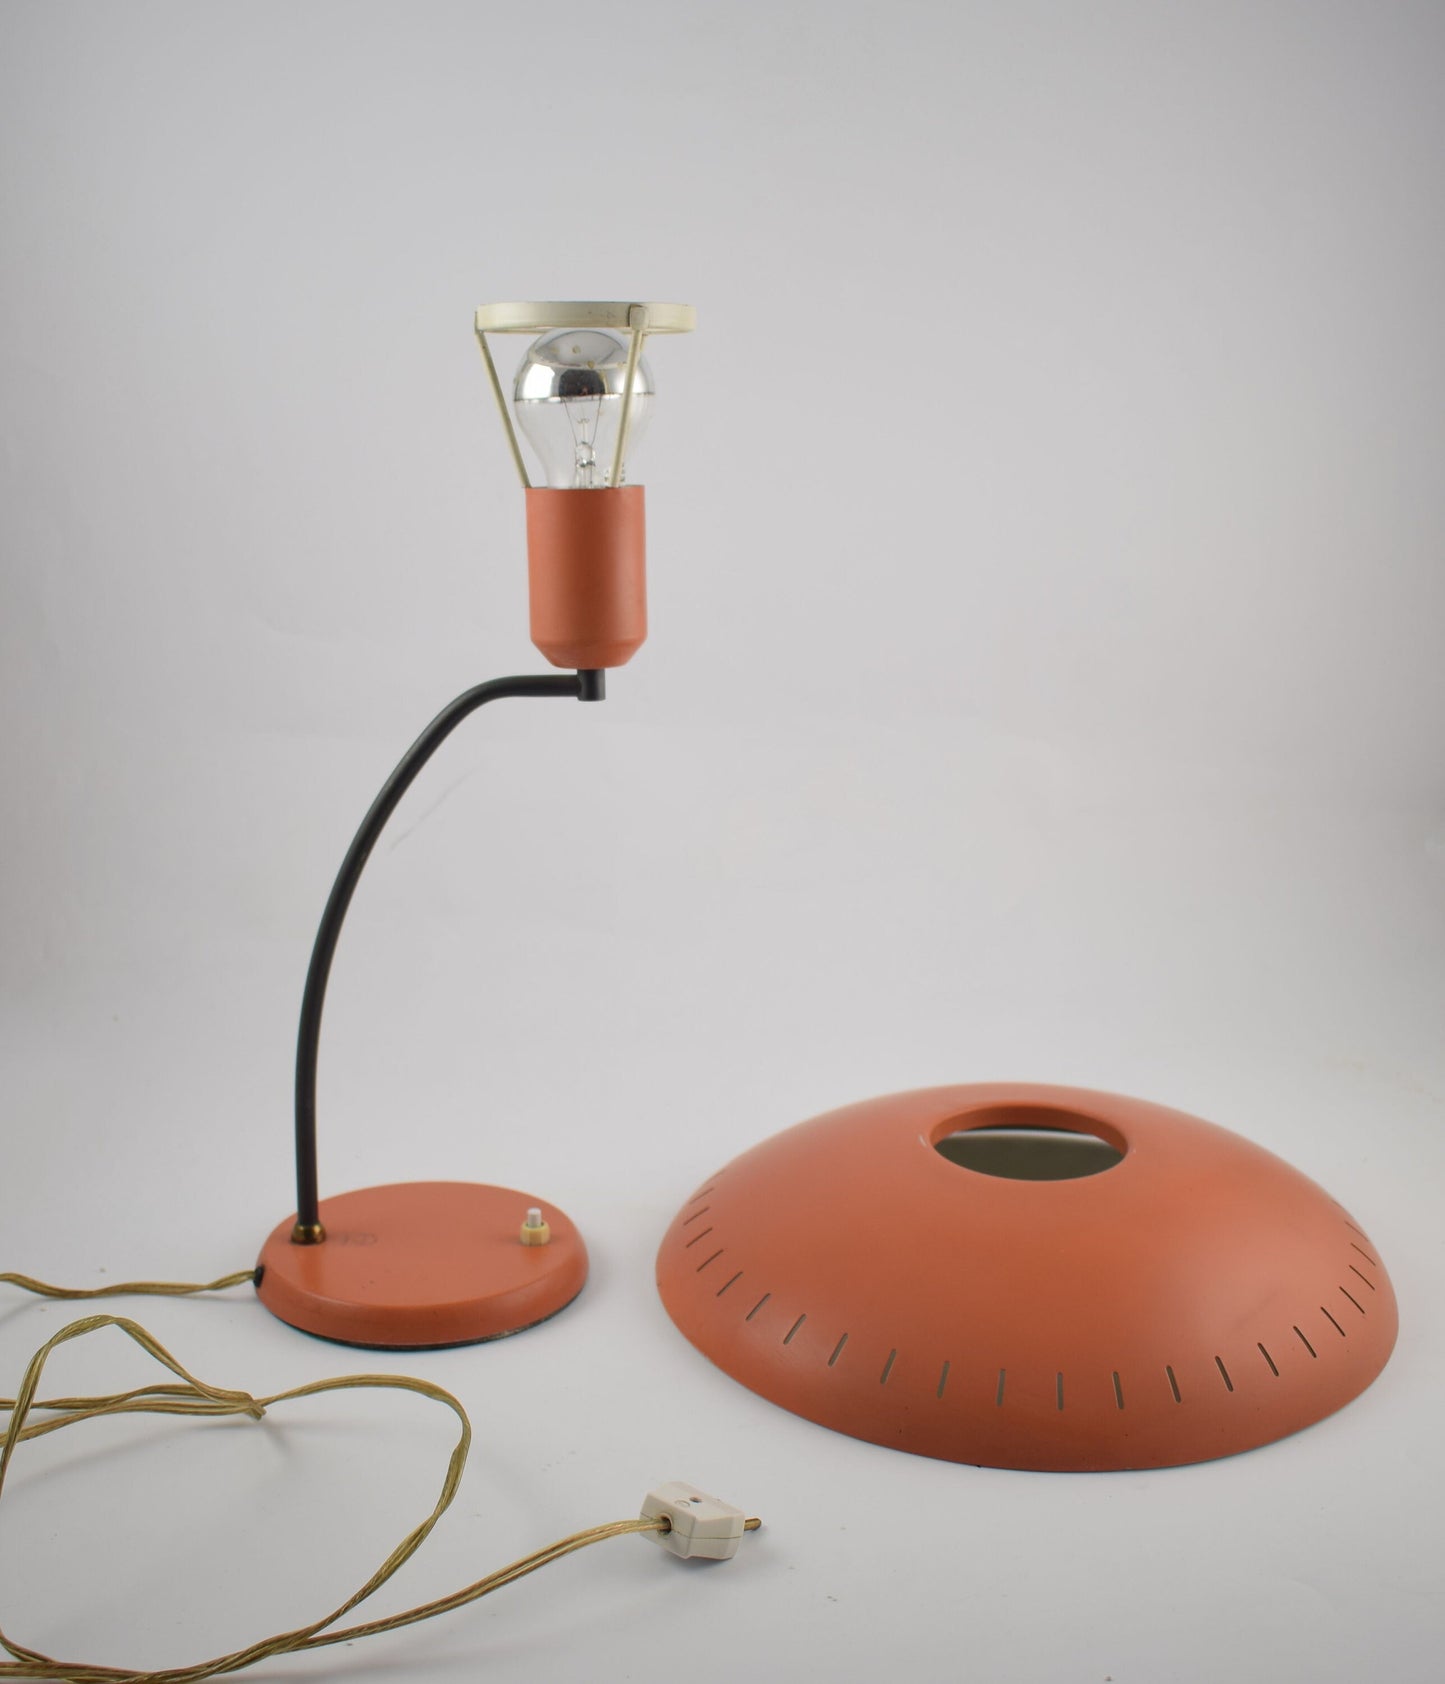 Louis Kalff zalmkleurige tafellamp Philips industrieel design icoon uit de jaren 50 en 60